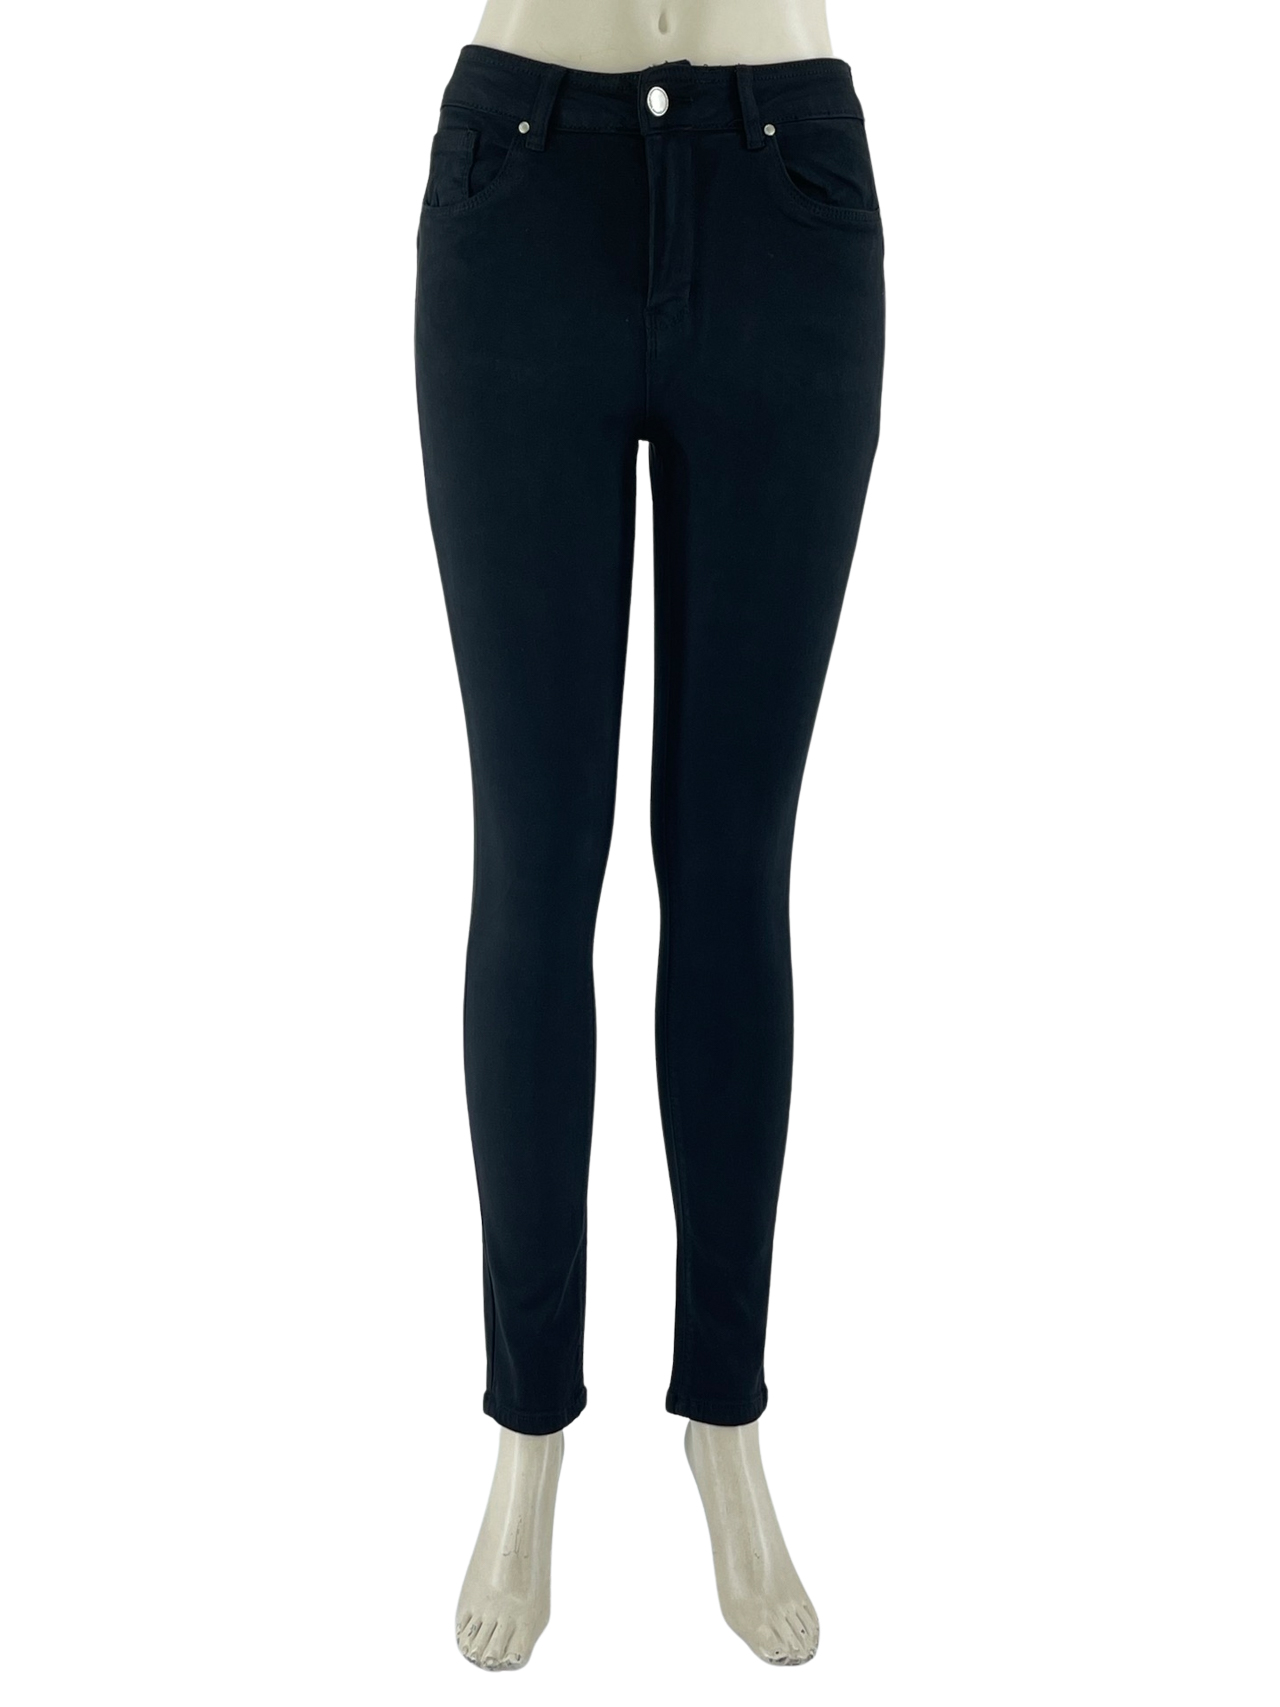 Παντελόνι γυναικείο skinny κωδ. M5780-1